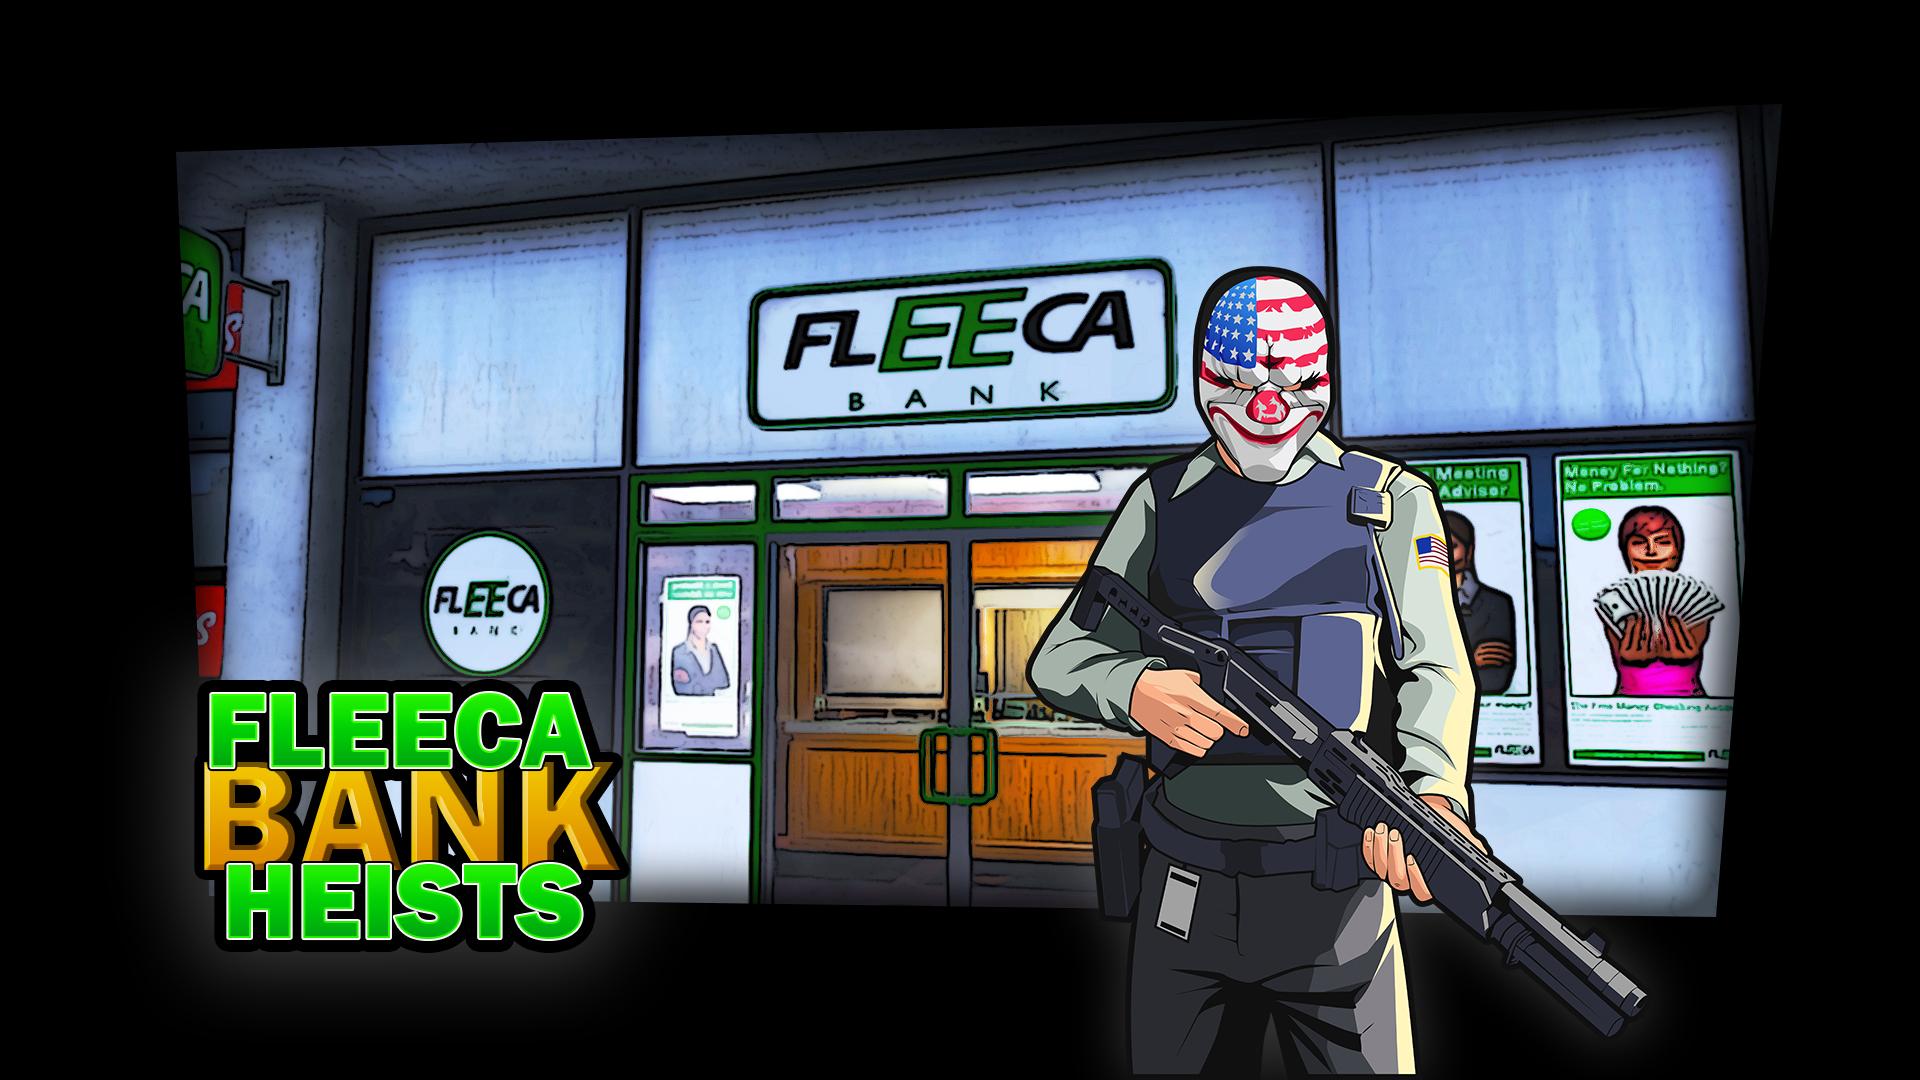 Fleeca bank in gta 5 фото 42